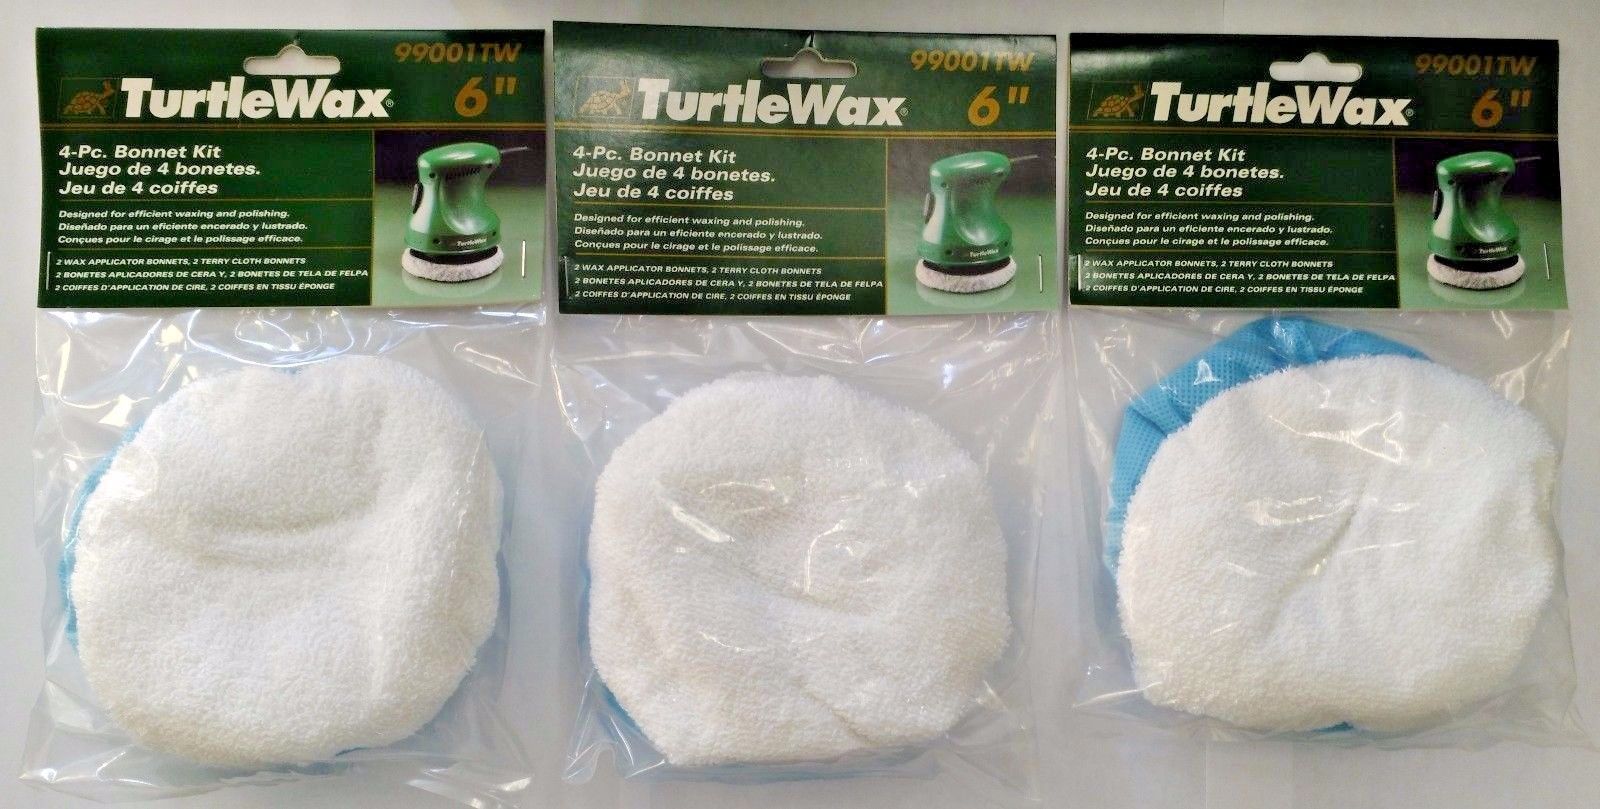 TurtleWax 99001TW 6" 4 Piece Bonnet Kit 3PKS